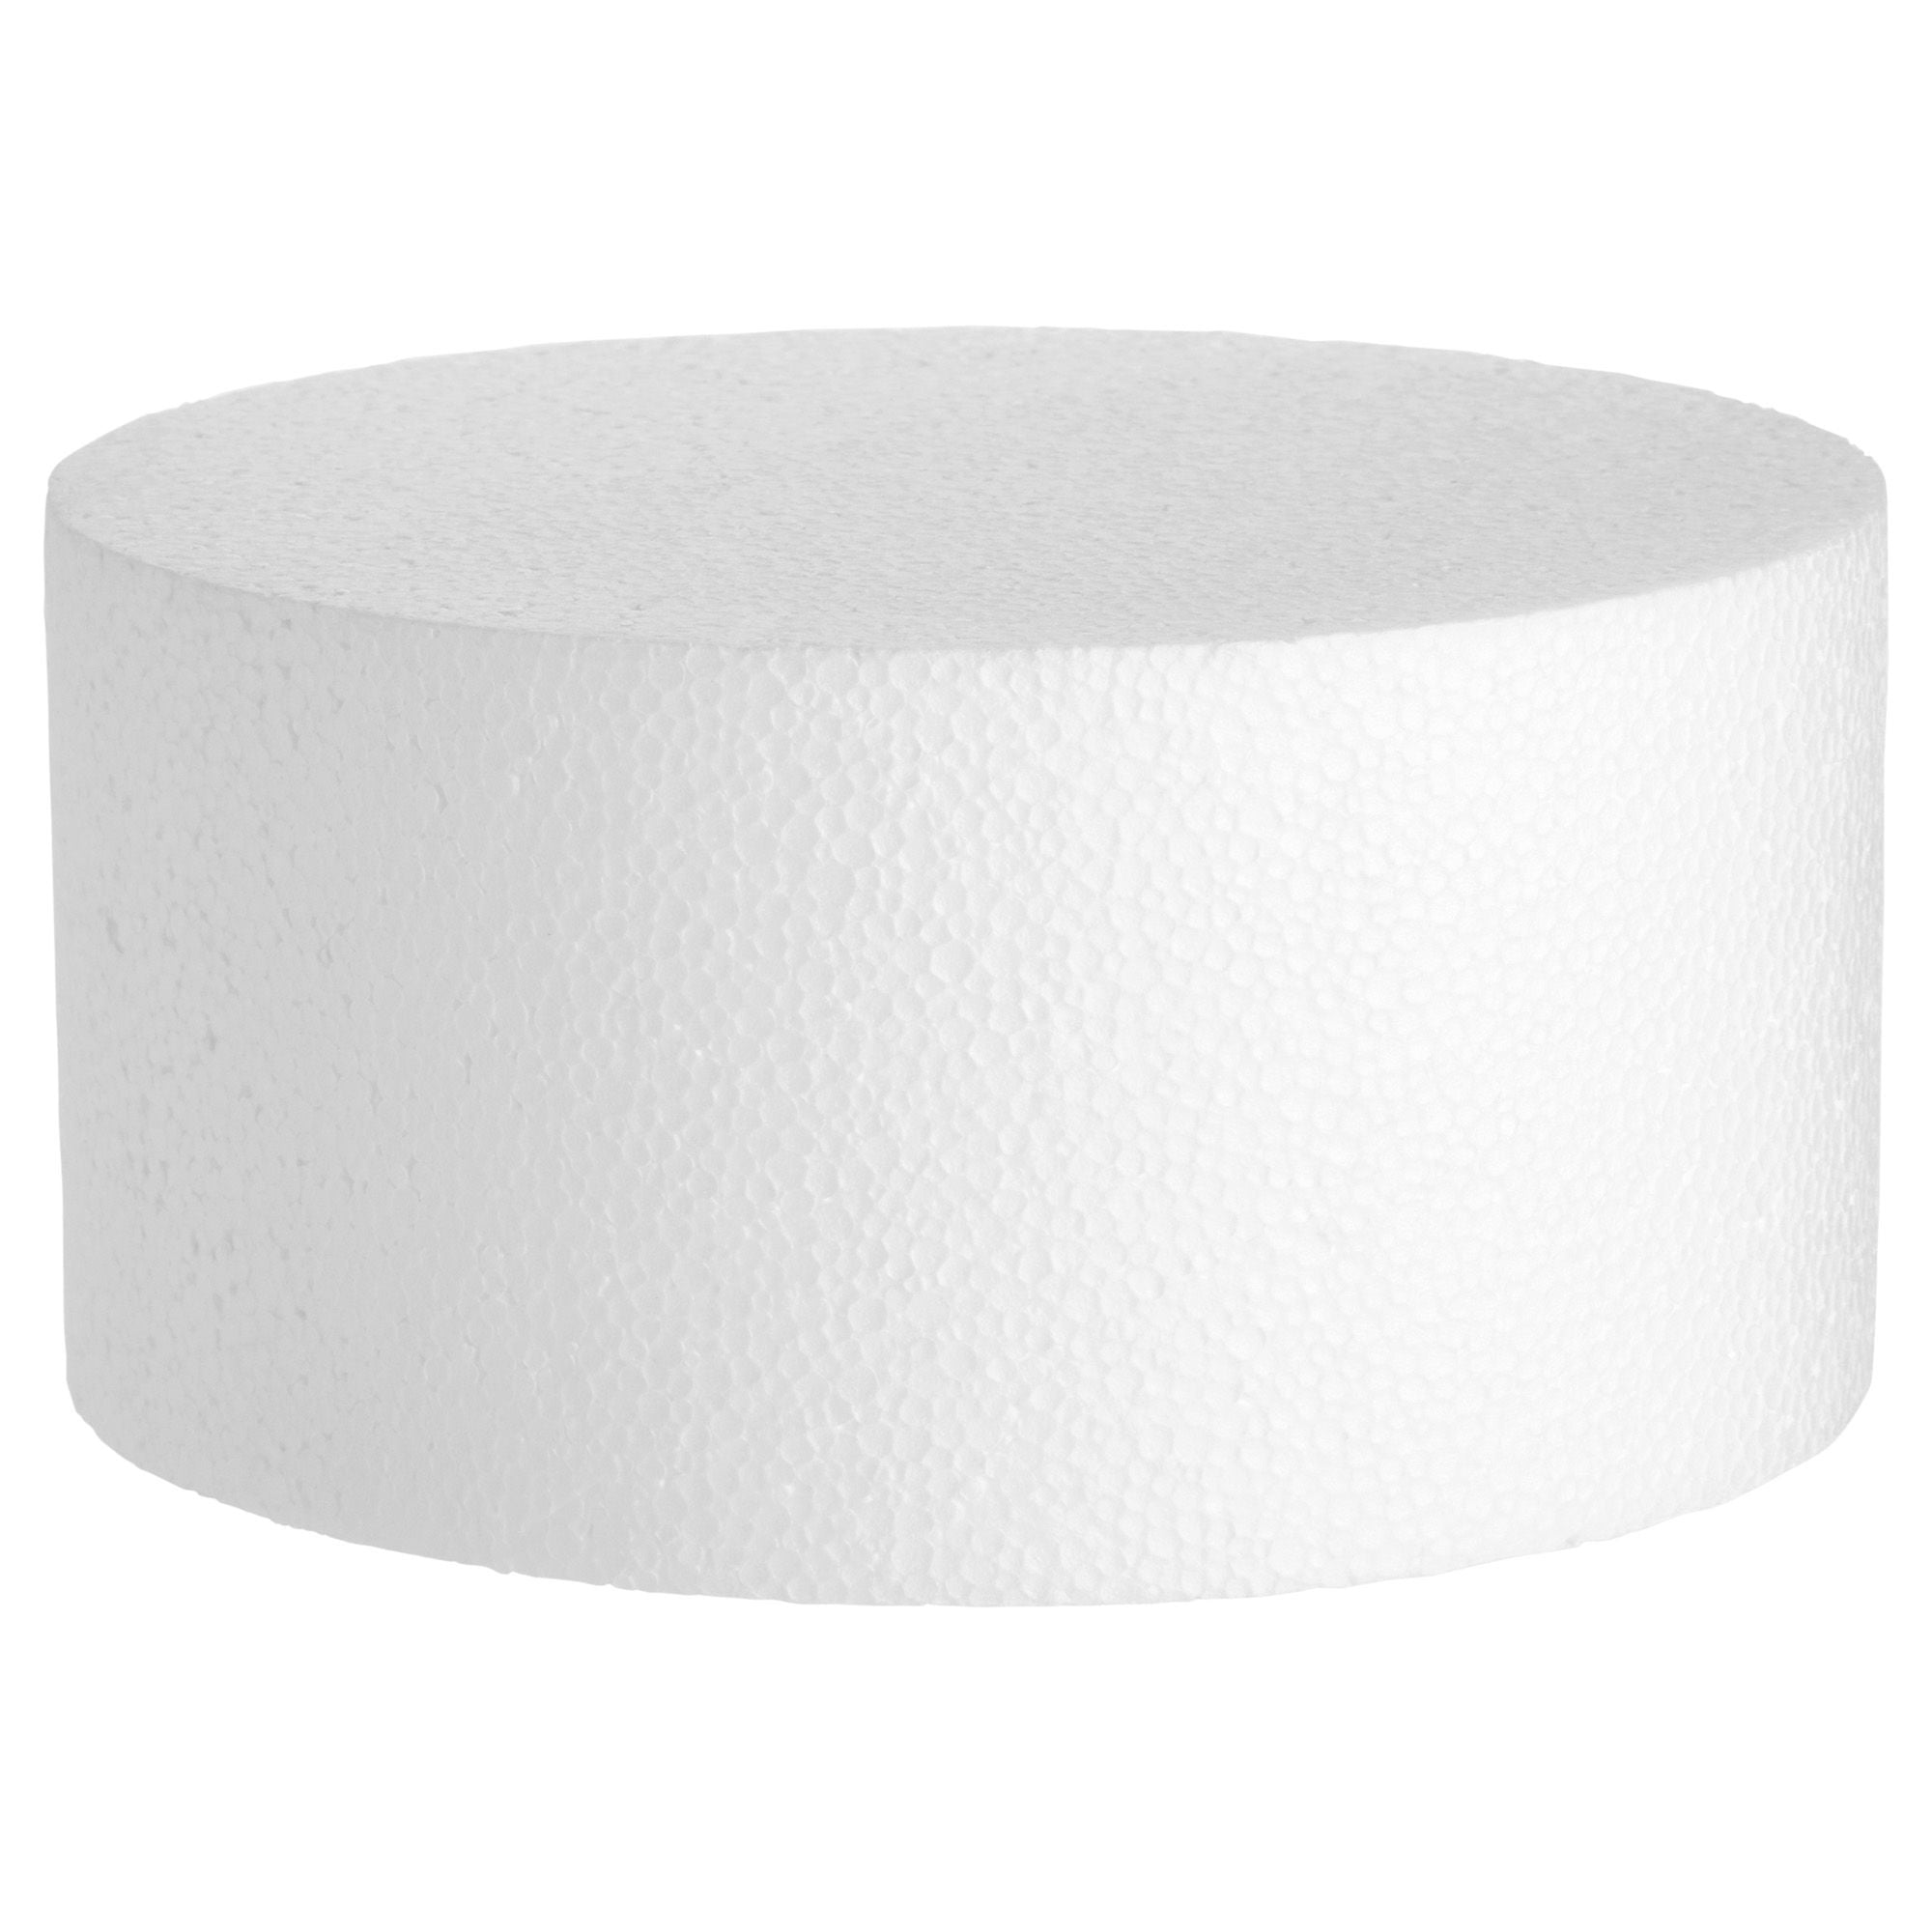 Cake Form - Styrofoam - 1/4 Sheet - 7-3/8 x 11-3/8 x 2 